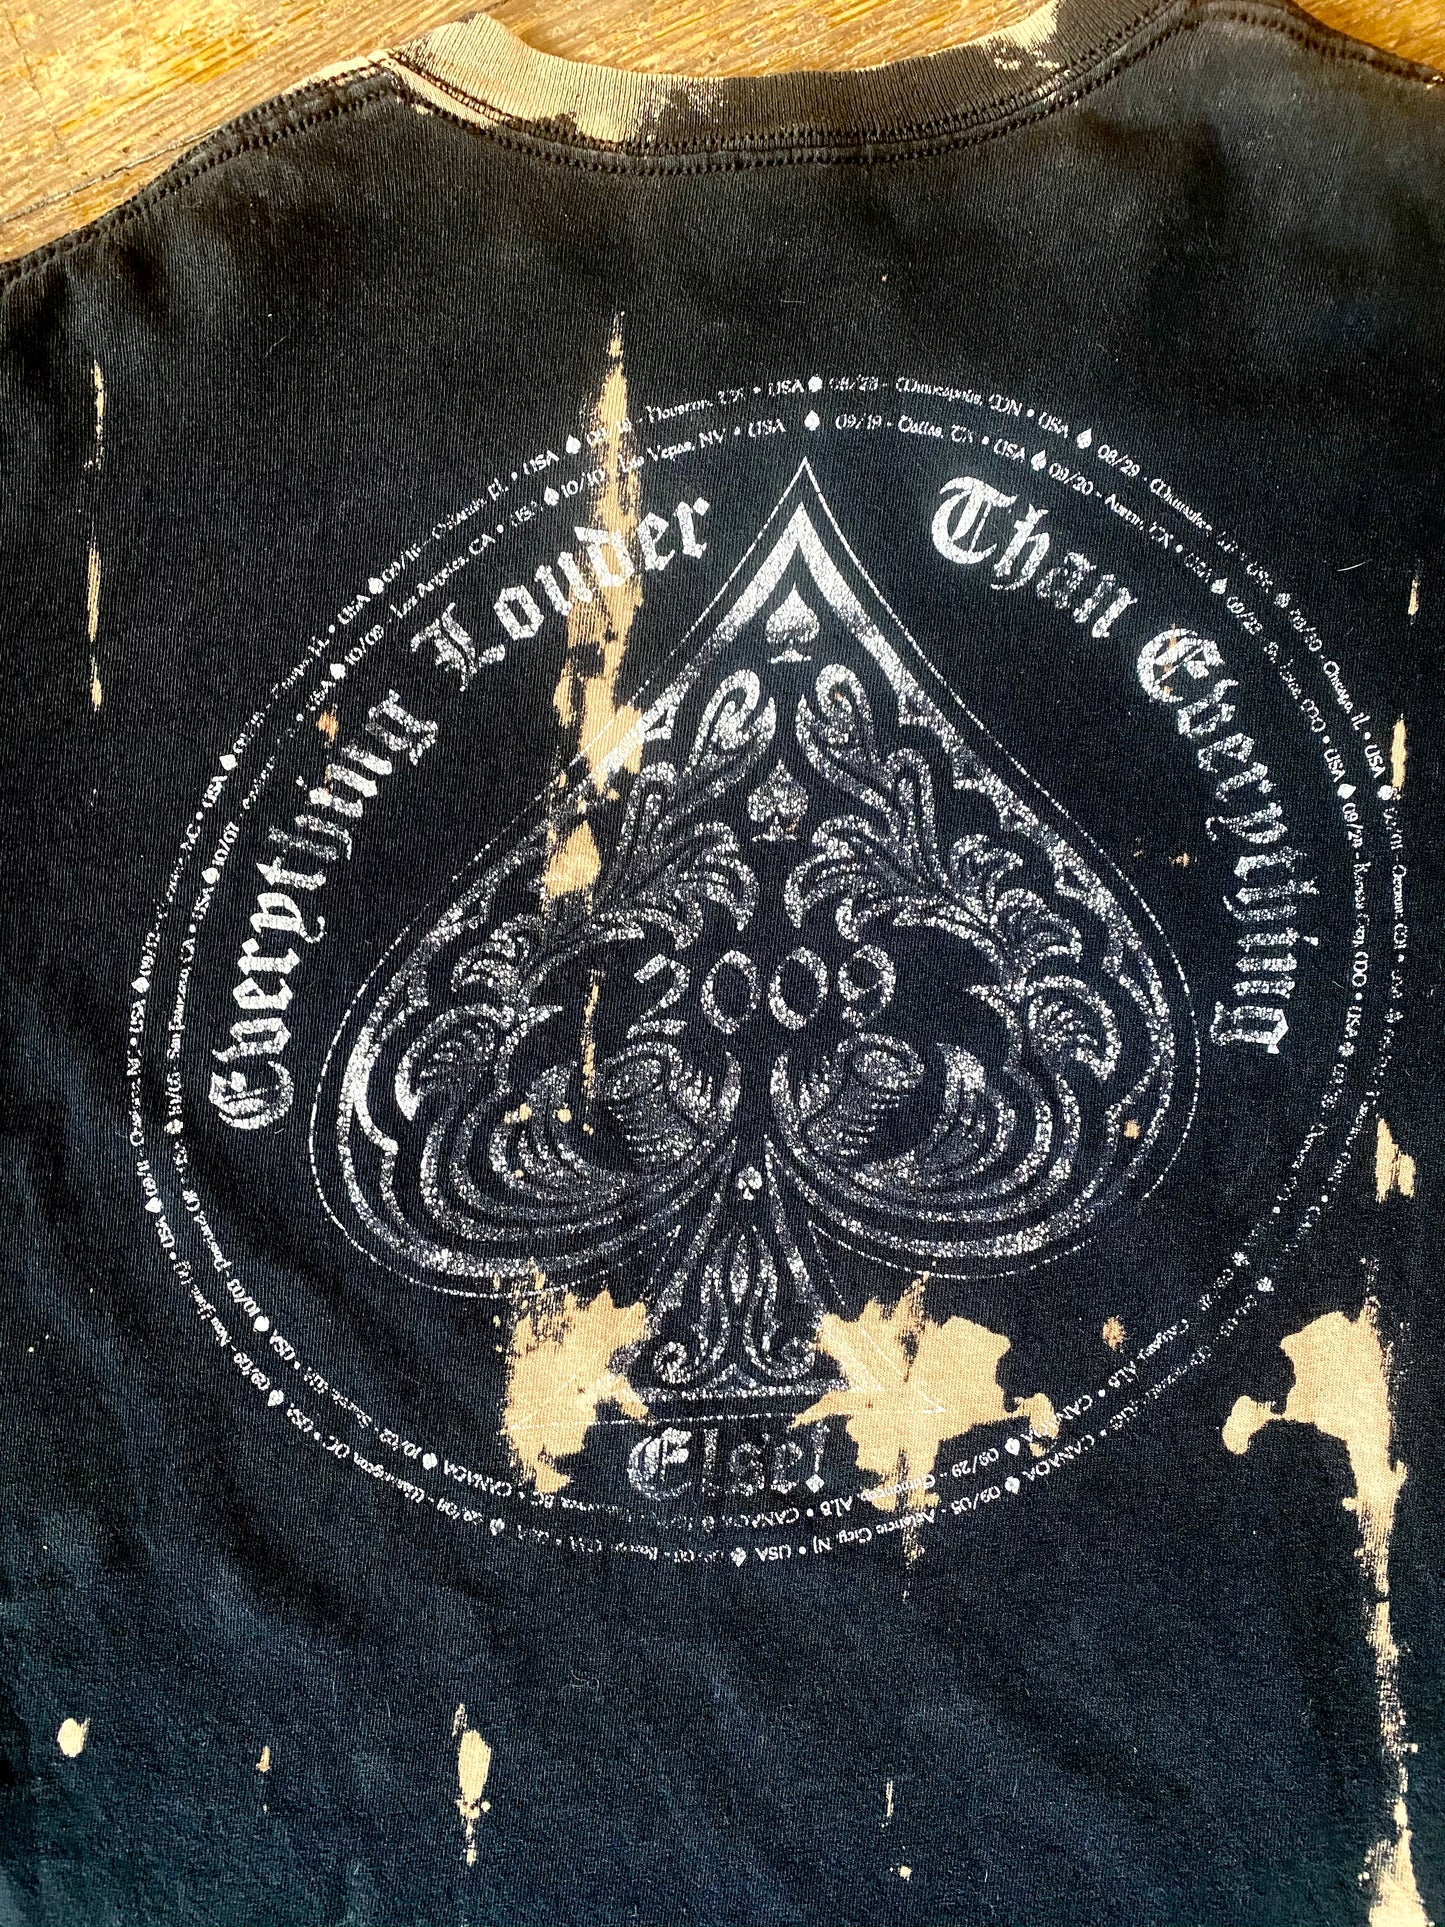 2009 Motörhead Tour Bleach Tie Dye T-Shirt